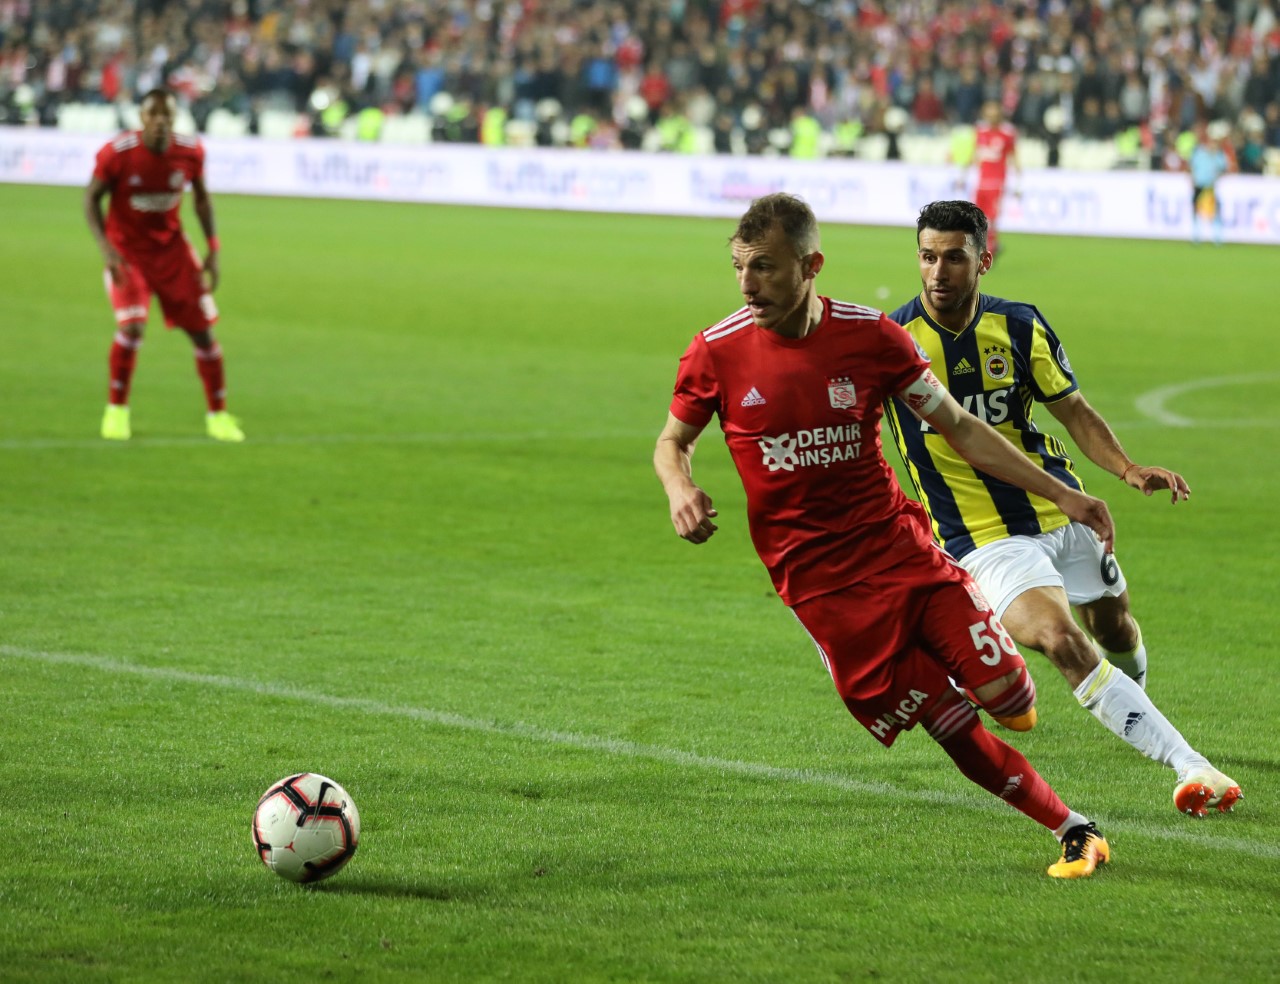 Demir Grup Sivasspor 0-0 Fenerbahçe